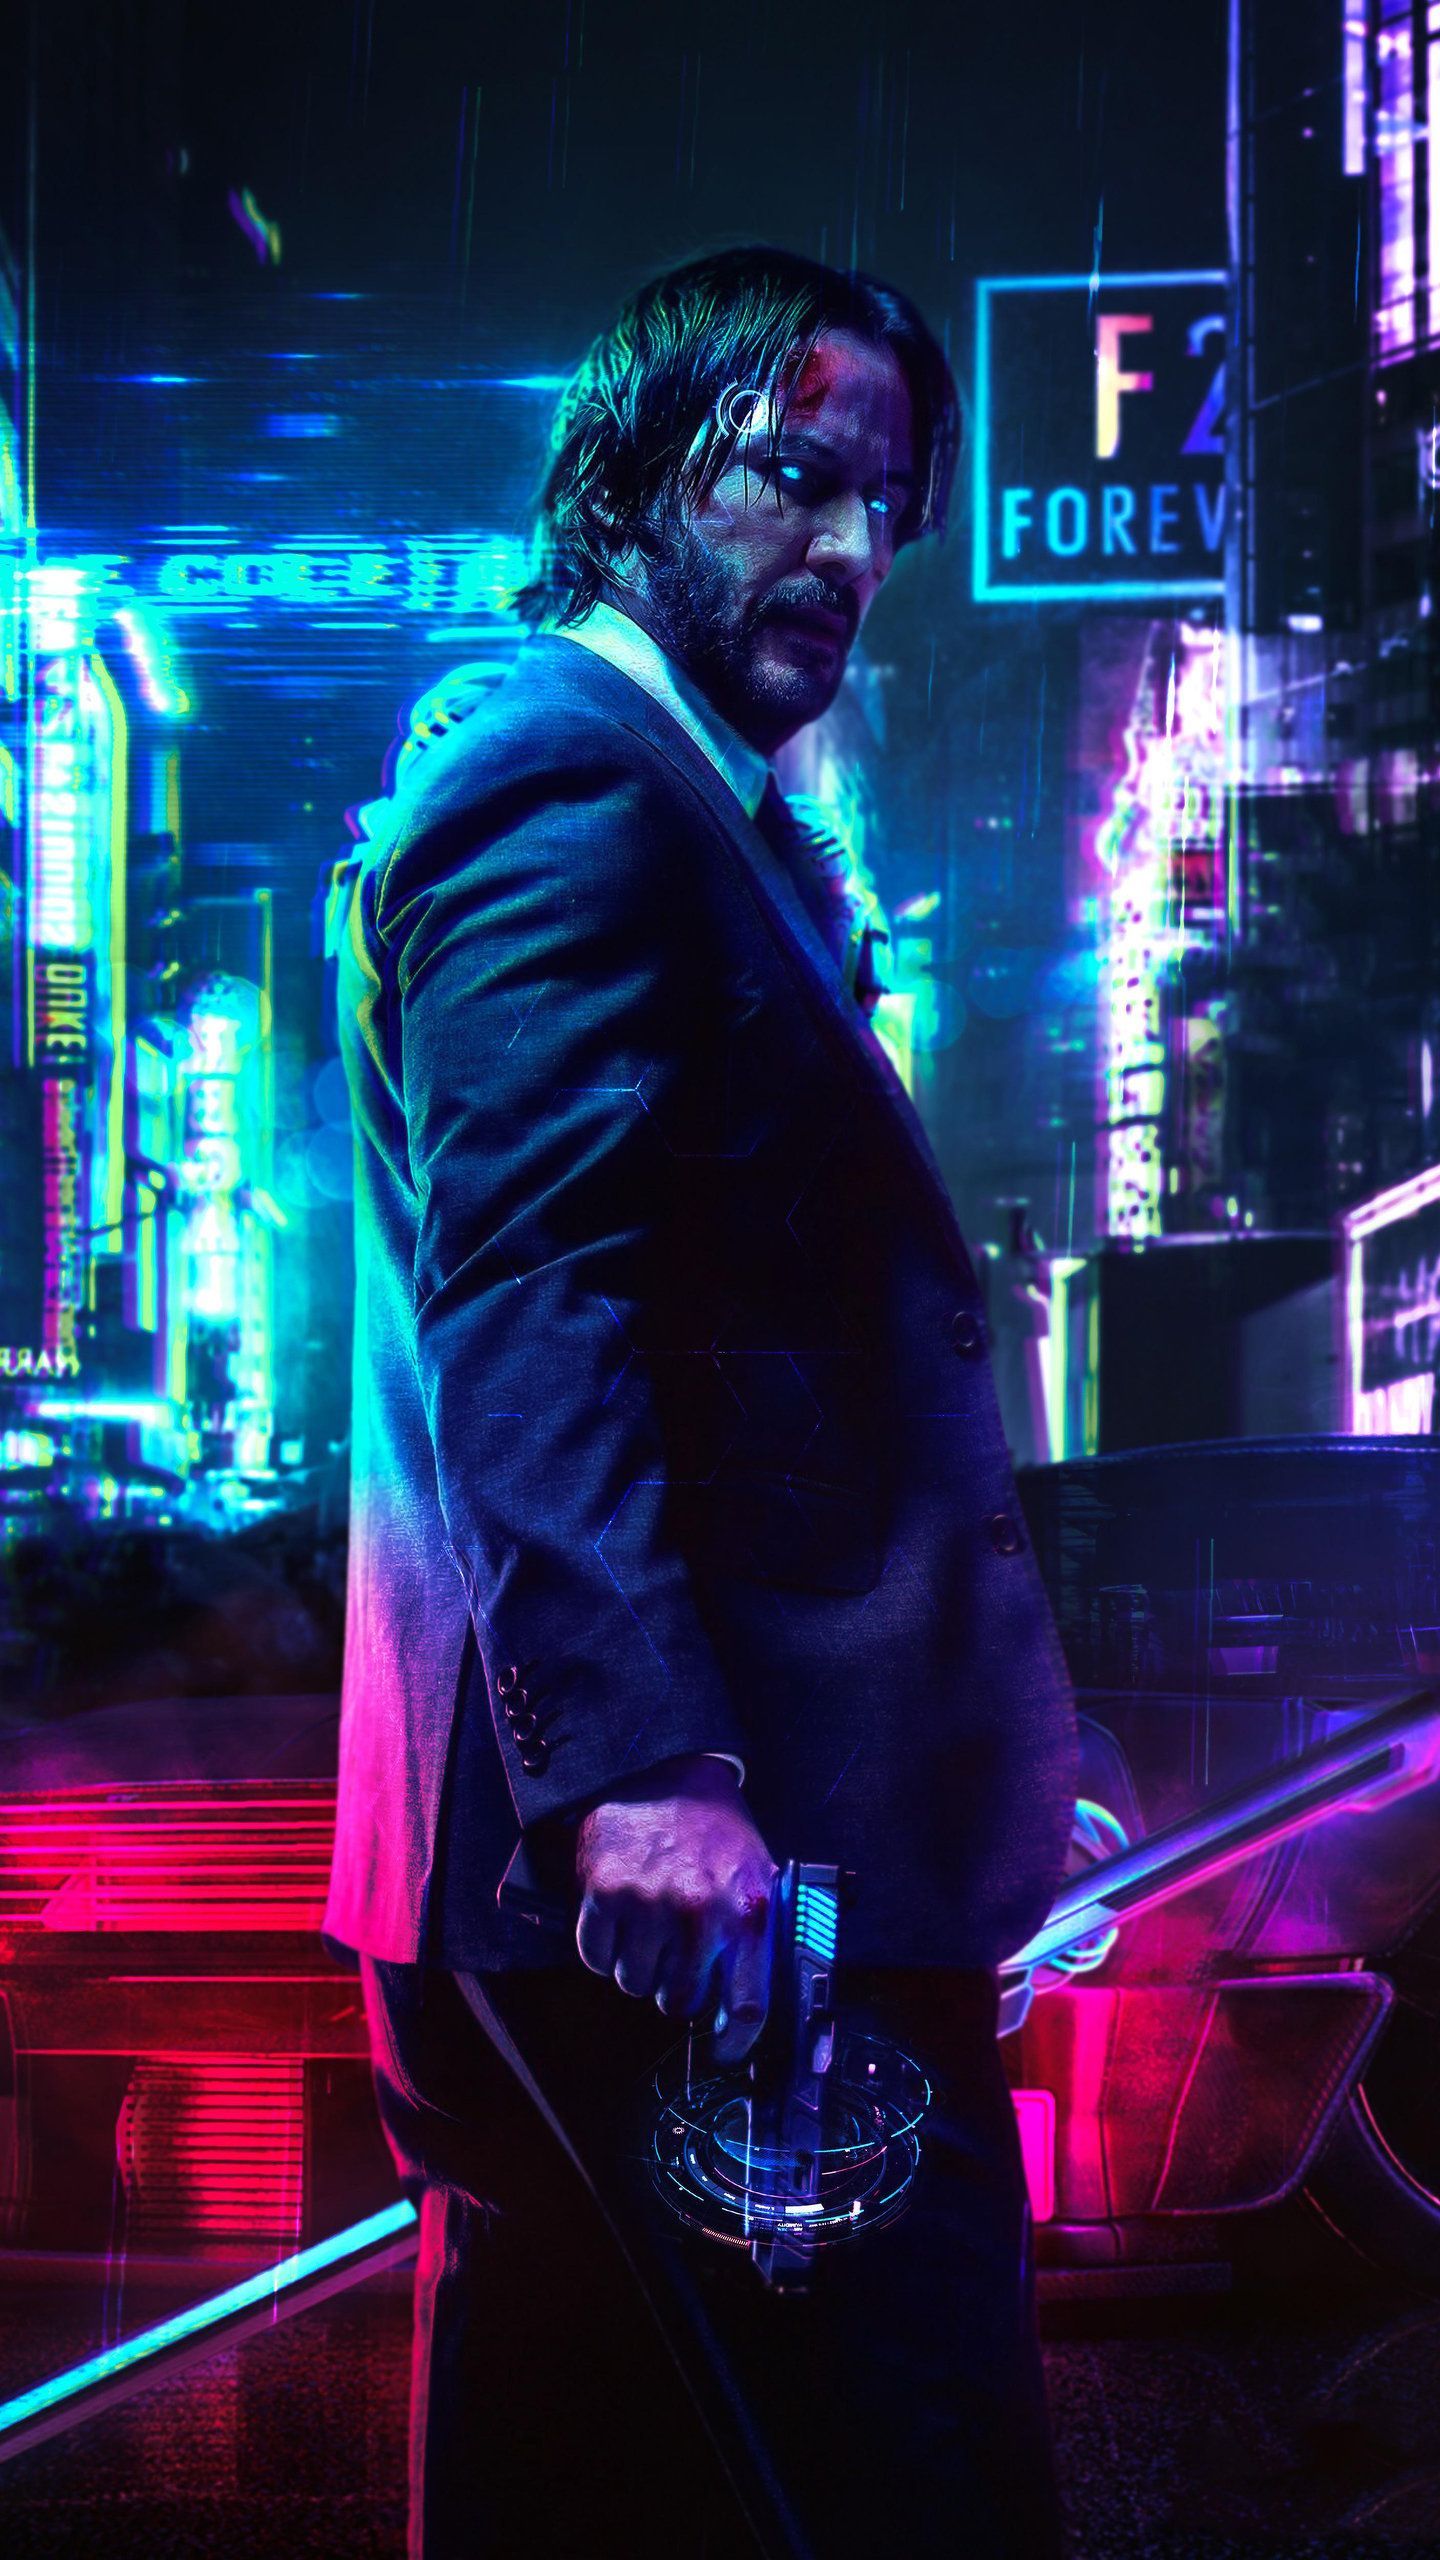 Keanu Reeves Cyberpunk 2077 FanArt HD Wallpaper in 2020